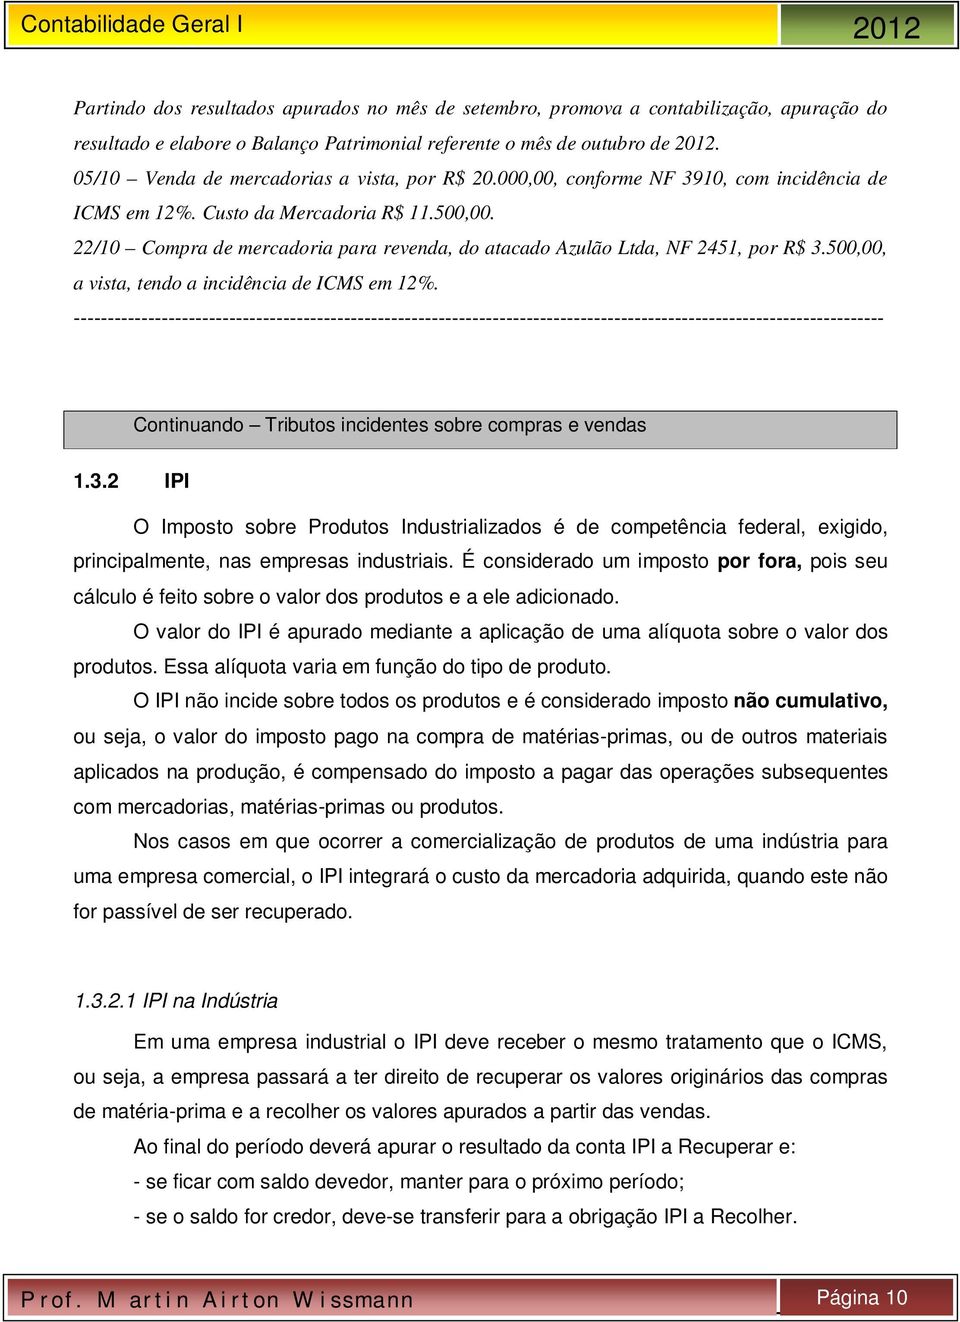 22/10 Compra de mercadoria para revenda, do atacado Azulão Ltda, NF 2451, por R$ 3.500,00, a vista, tendo a incidência de ICMS em 12%.